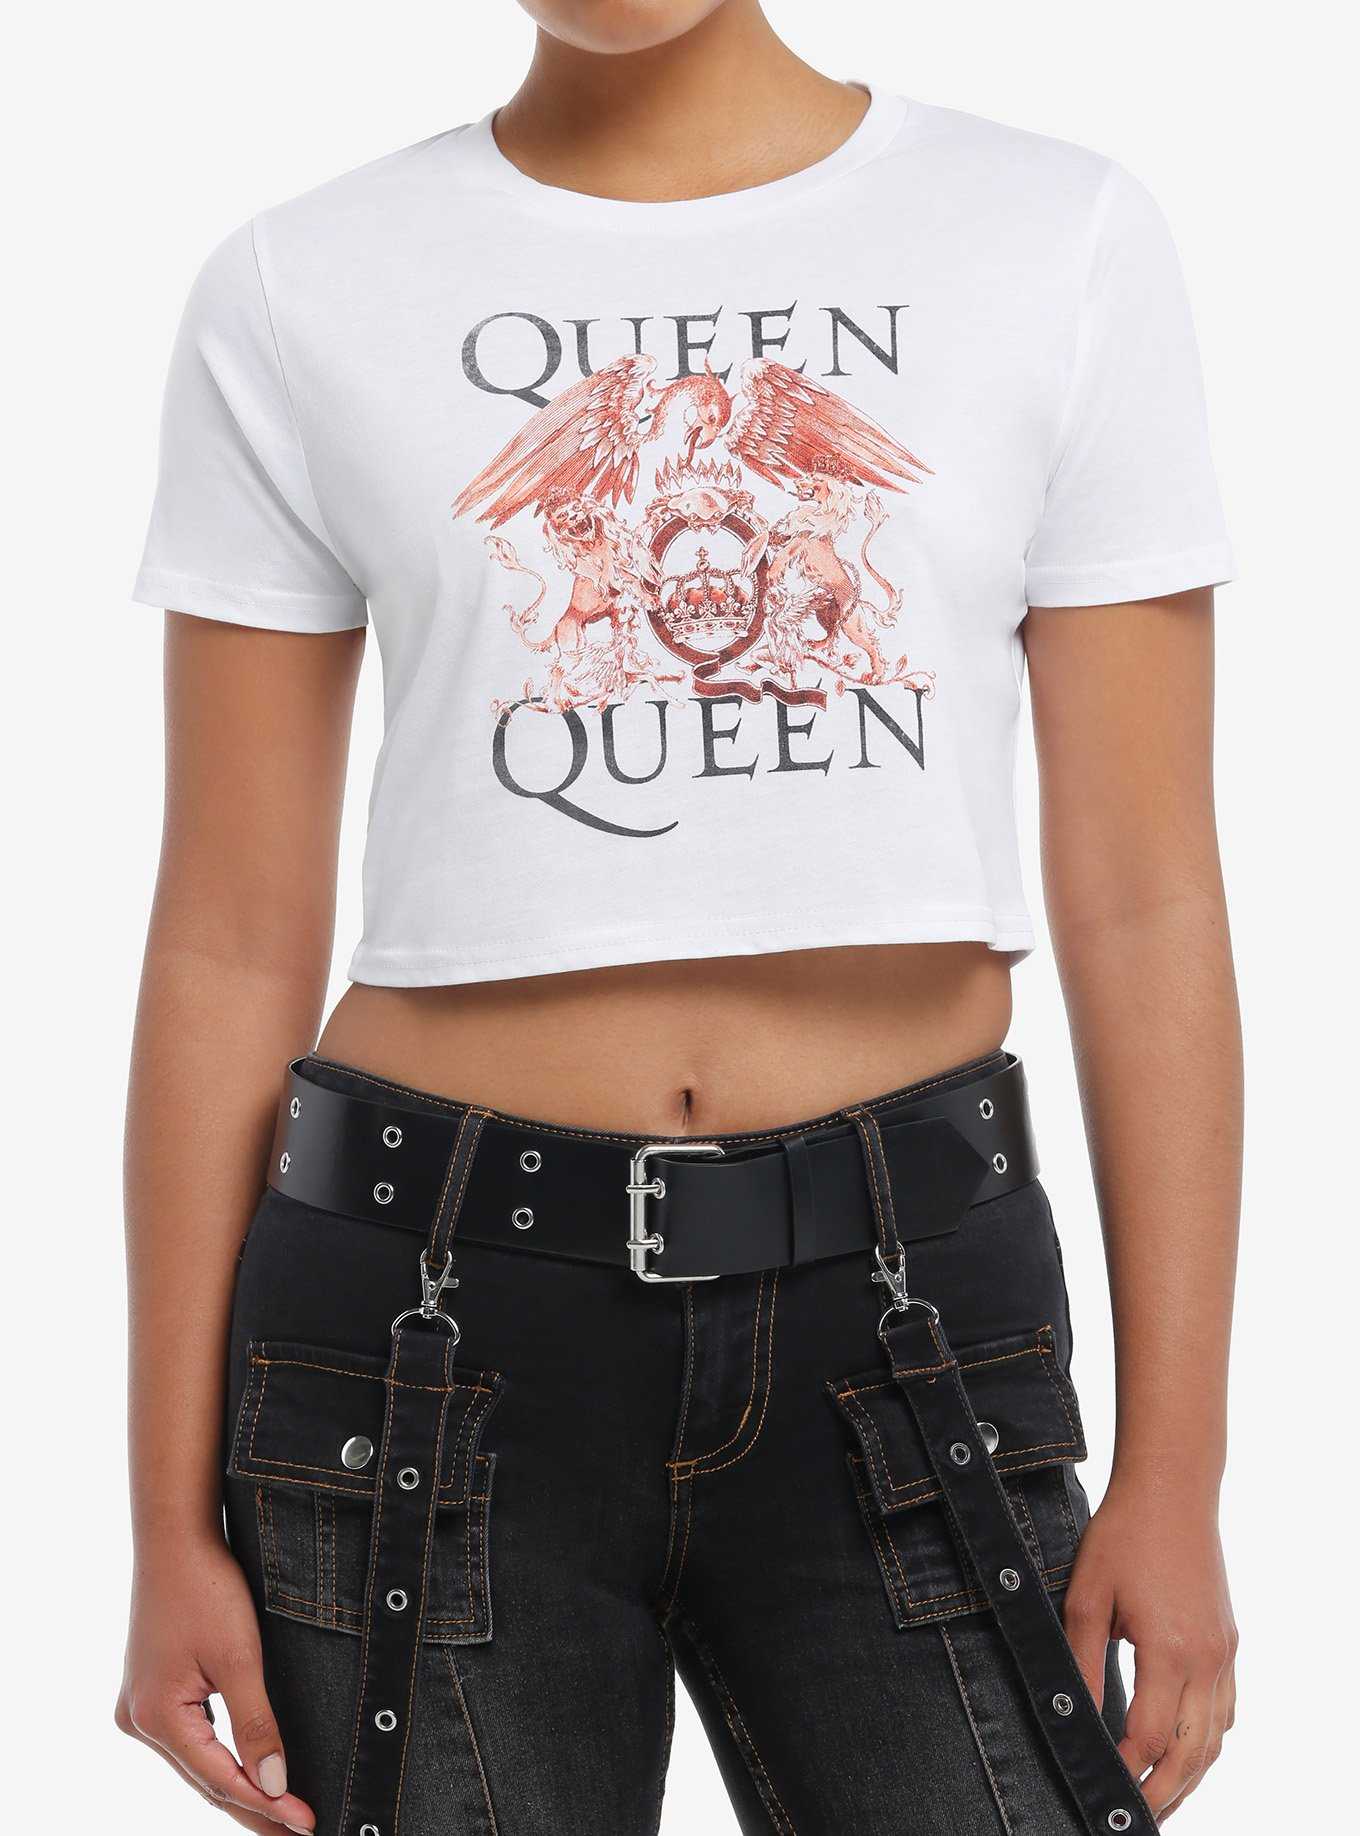 Queen Crest Girls Baby T-Shirt, , hi-res